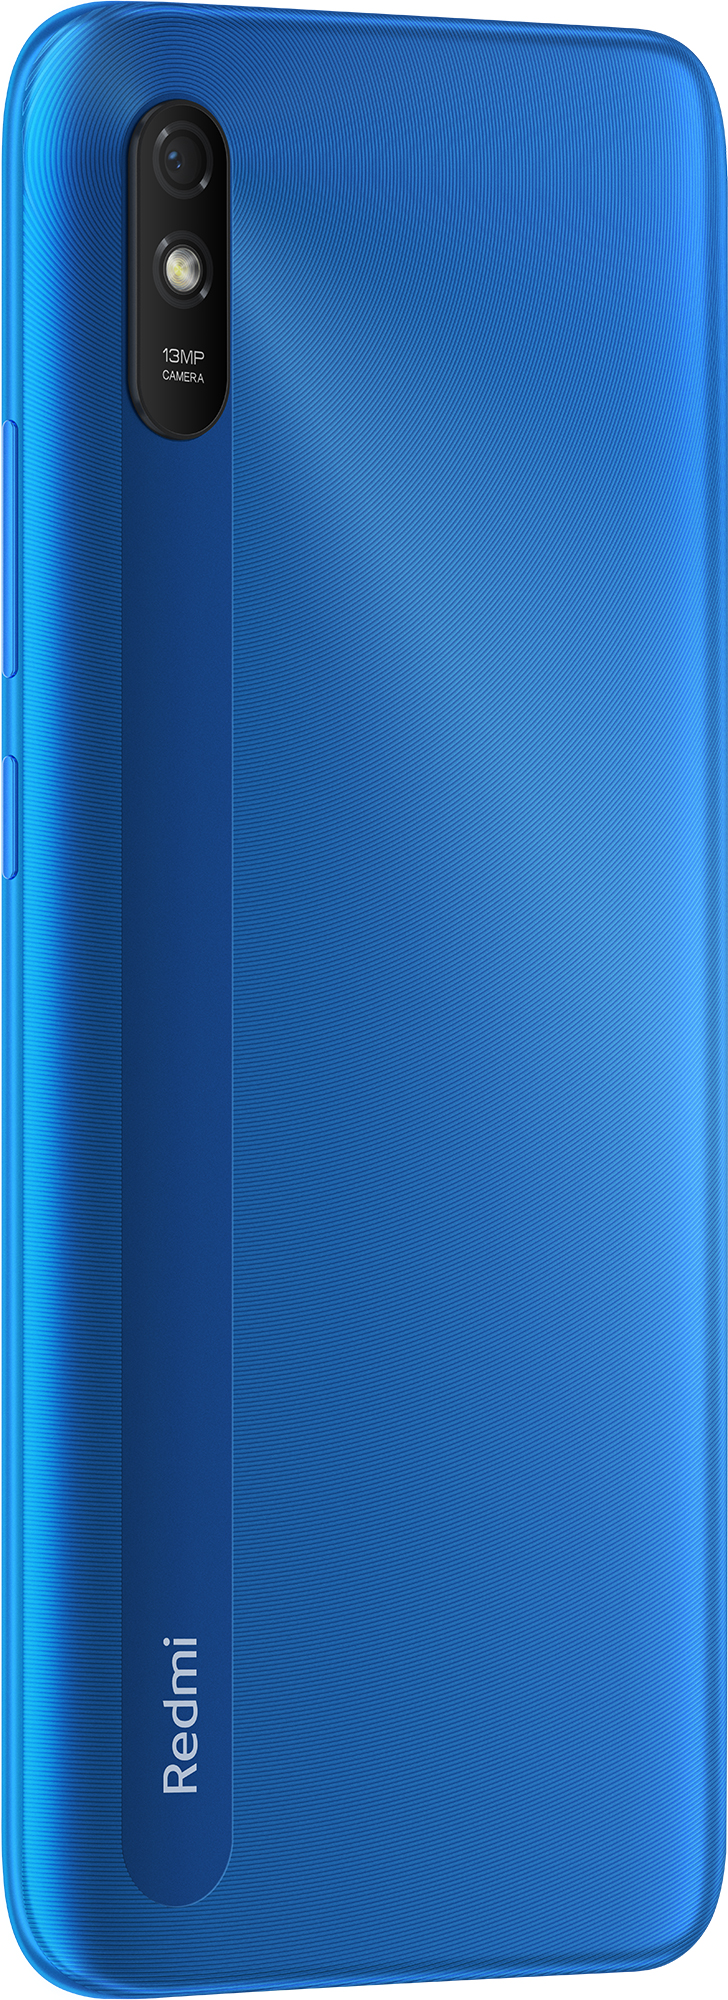 Смартфон Xiaomi Redmi 9A 2/32GB (M2006C3LG) Sky Blue nalichie